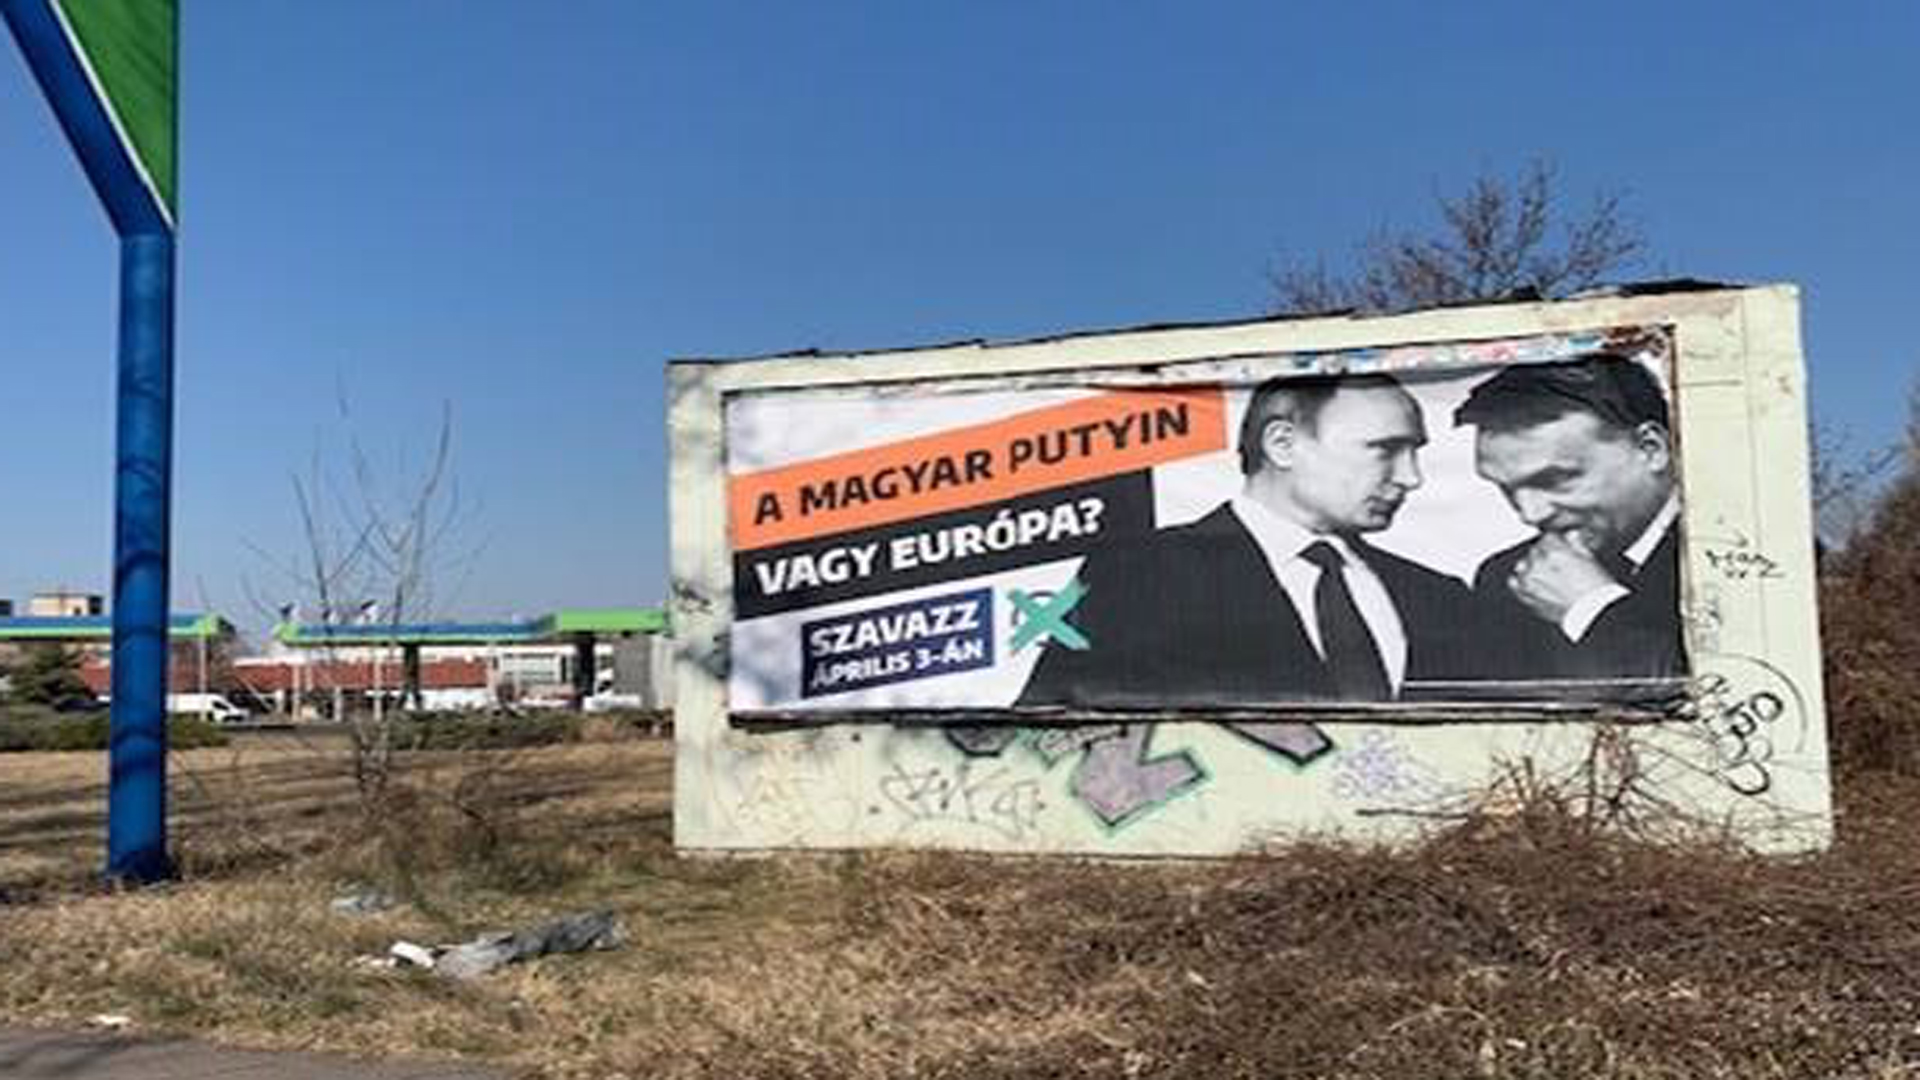 Viktor Orbán und Wladimir Putin auf einem Plakat der ungarischen Opposition. | ARD-Studio Wien